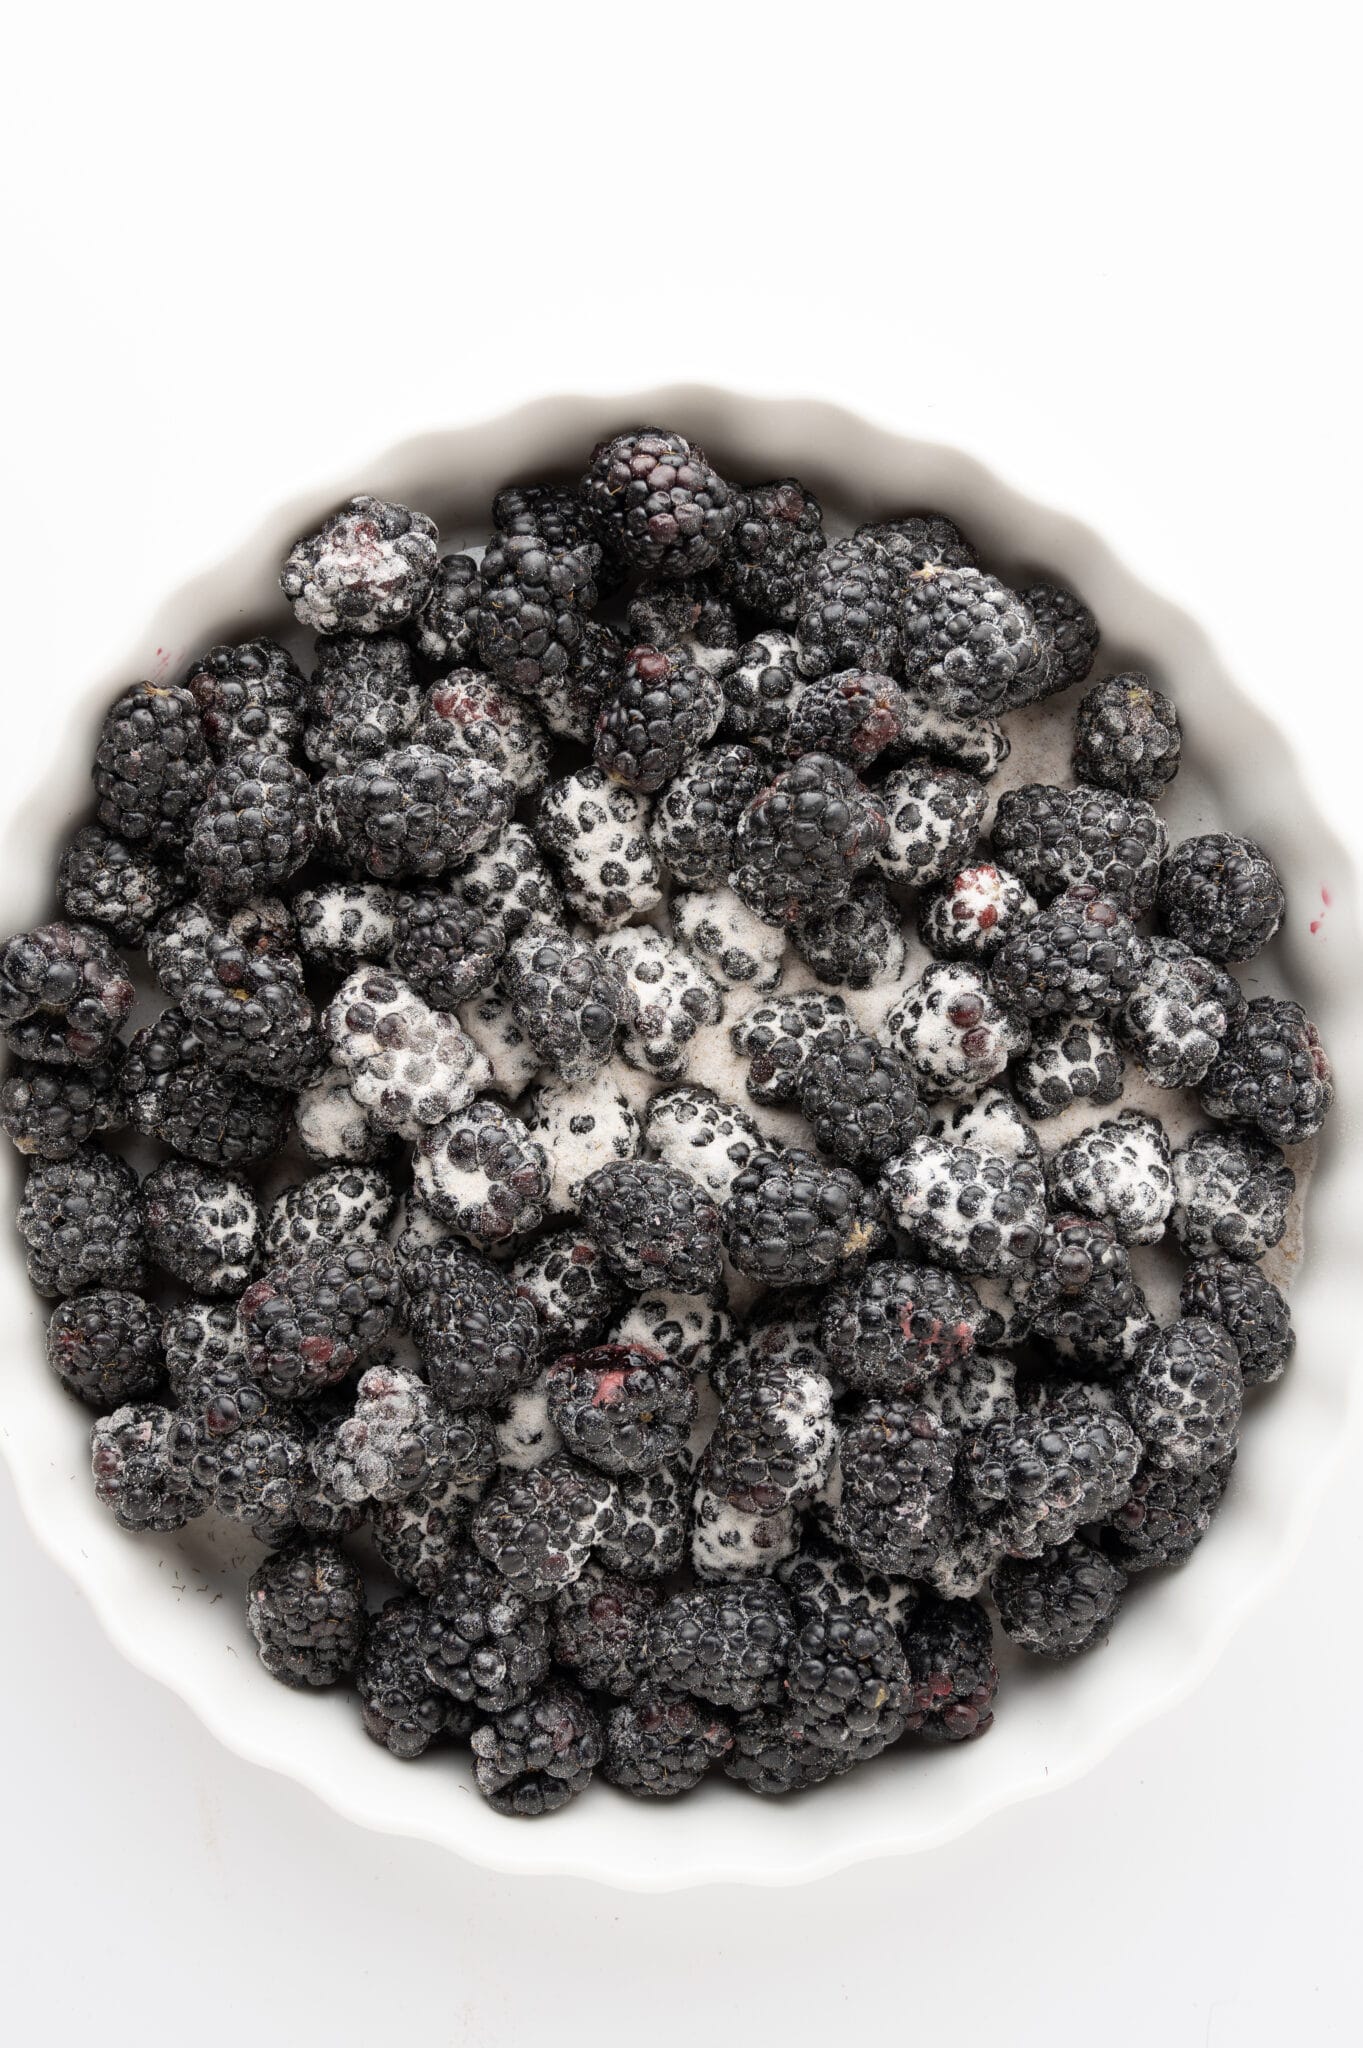 Sweetener coated blackberries in a white tart pan. 